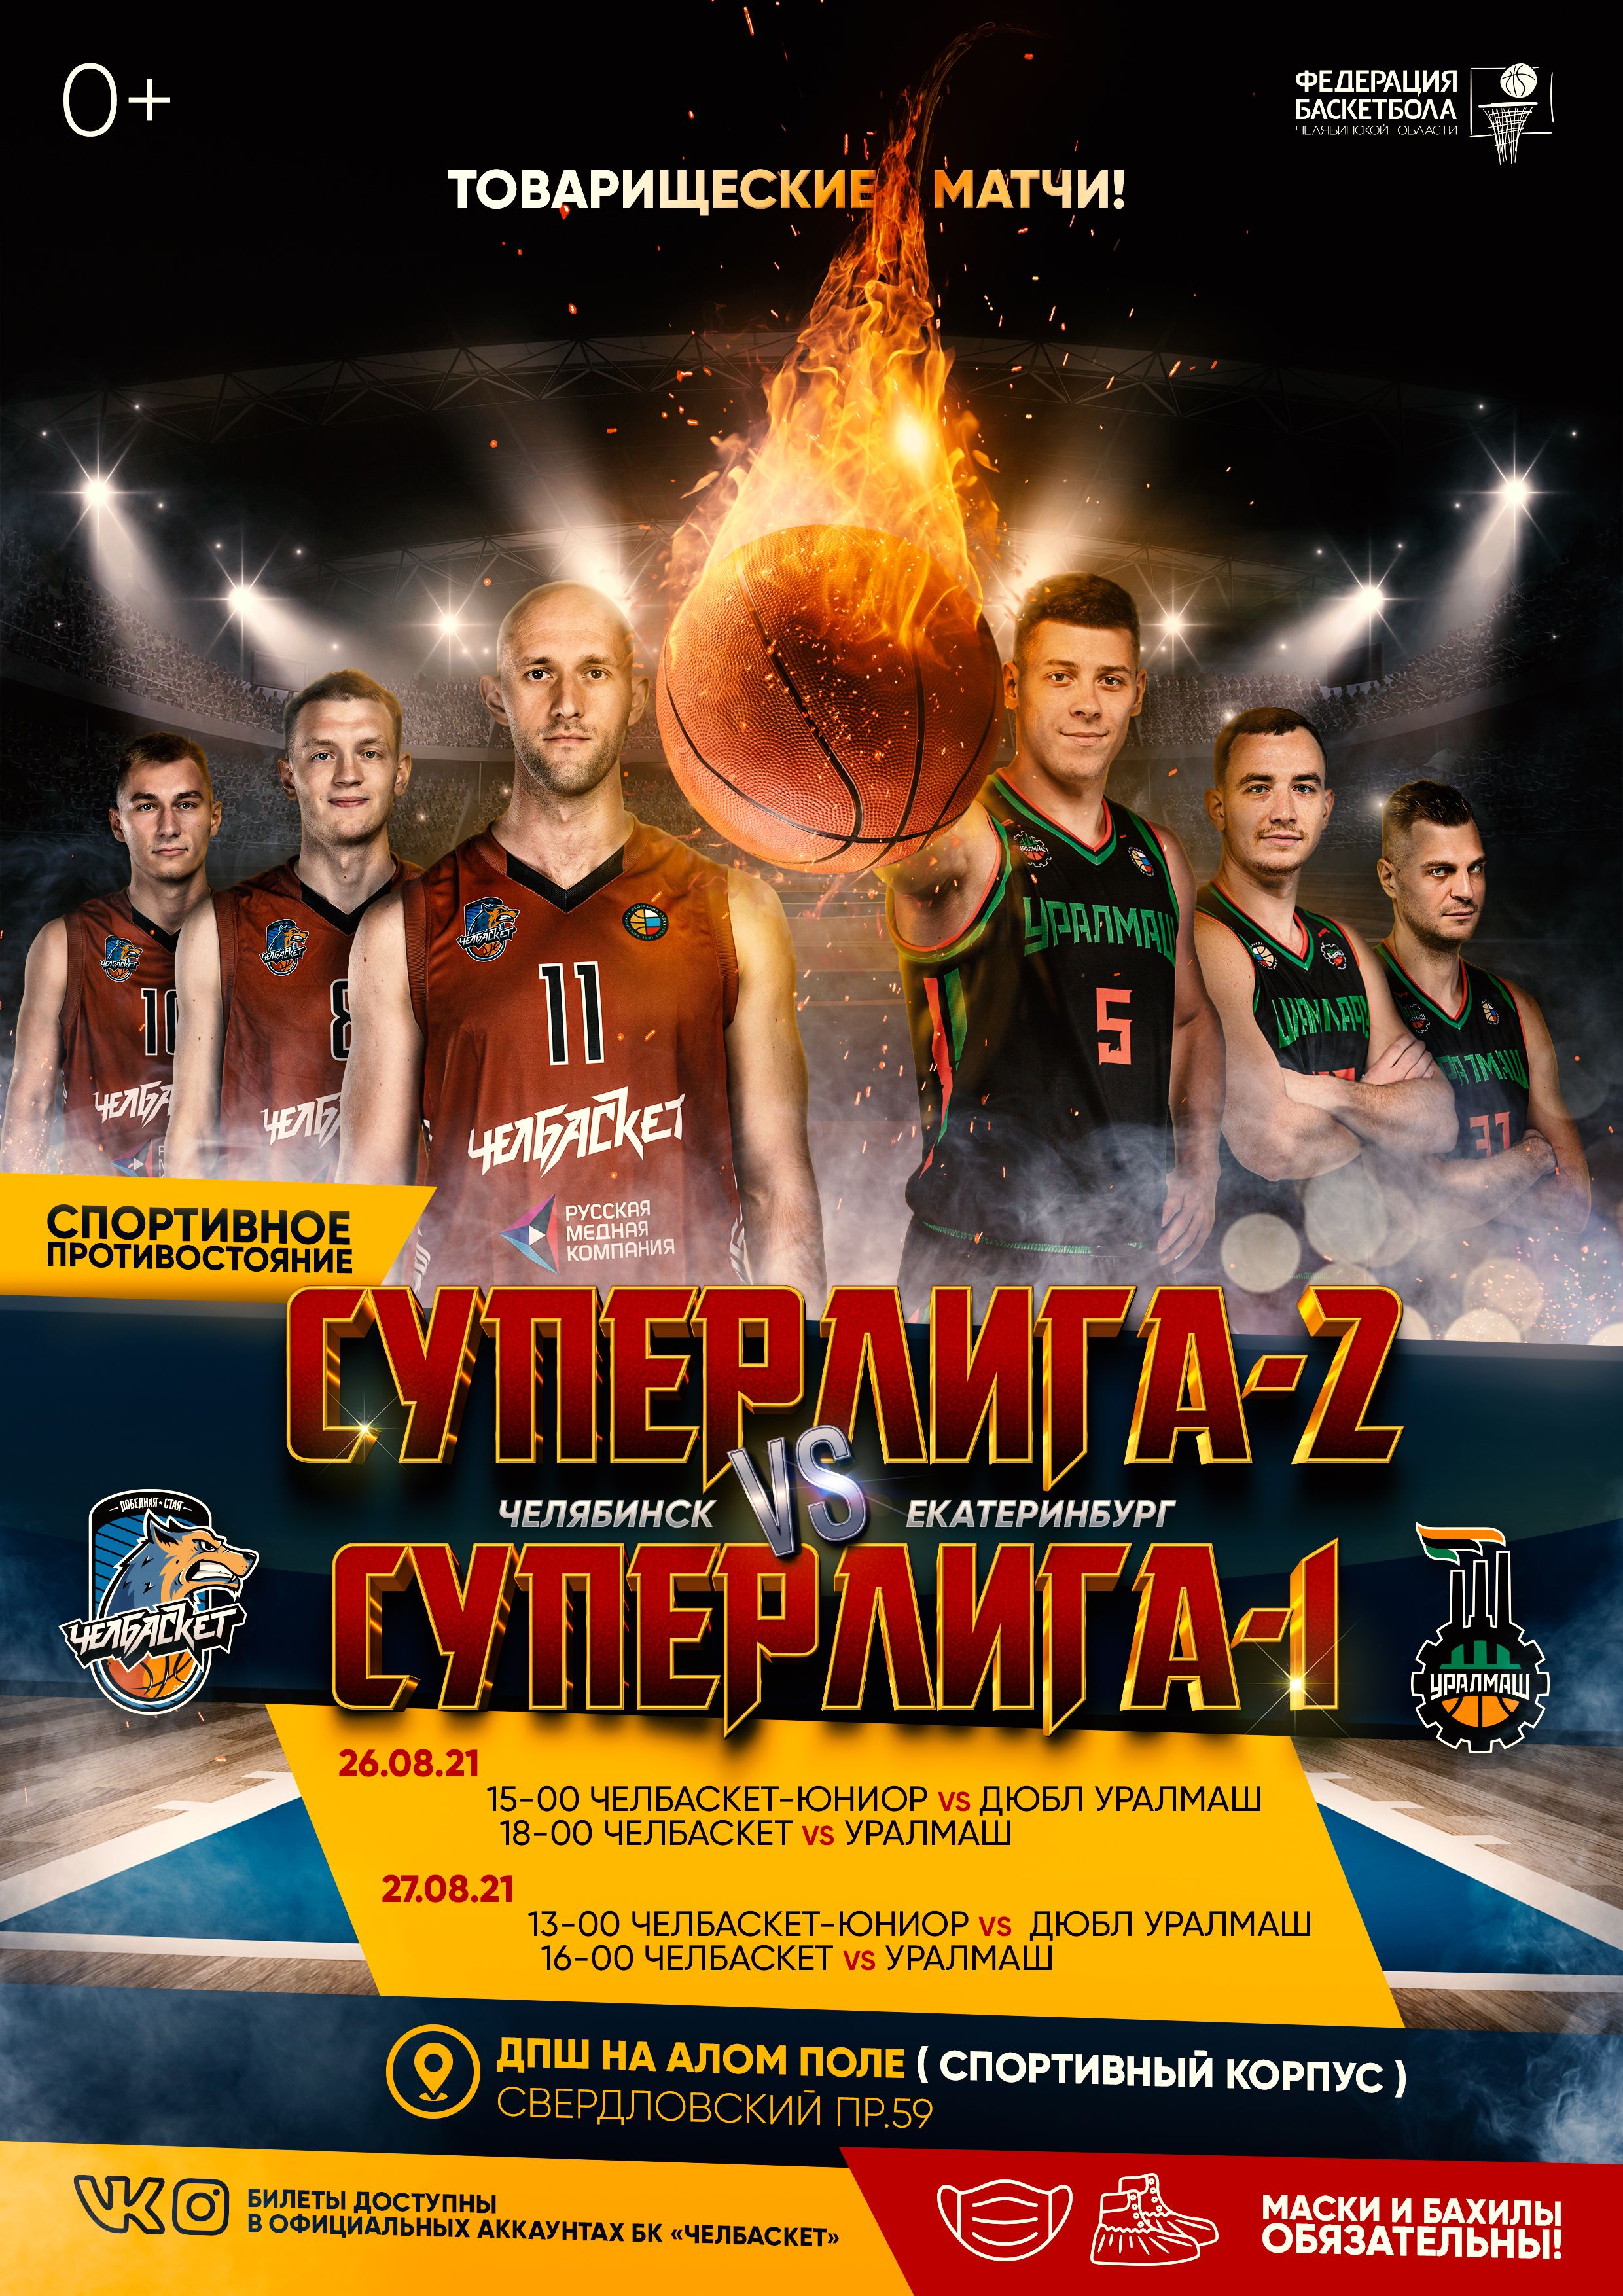 Баскетбольное противостояние: Челябинск vs Екатеринбург